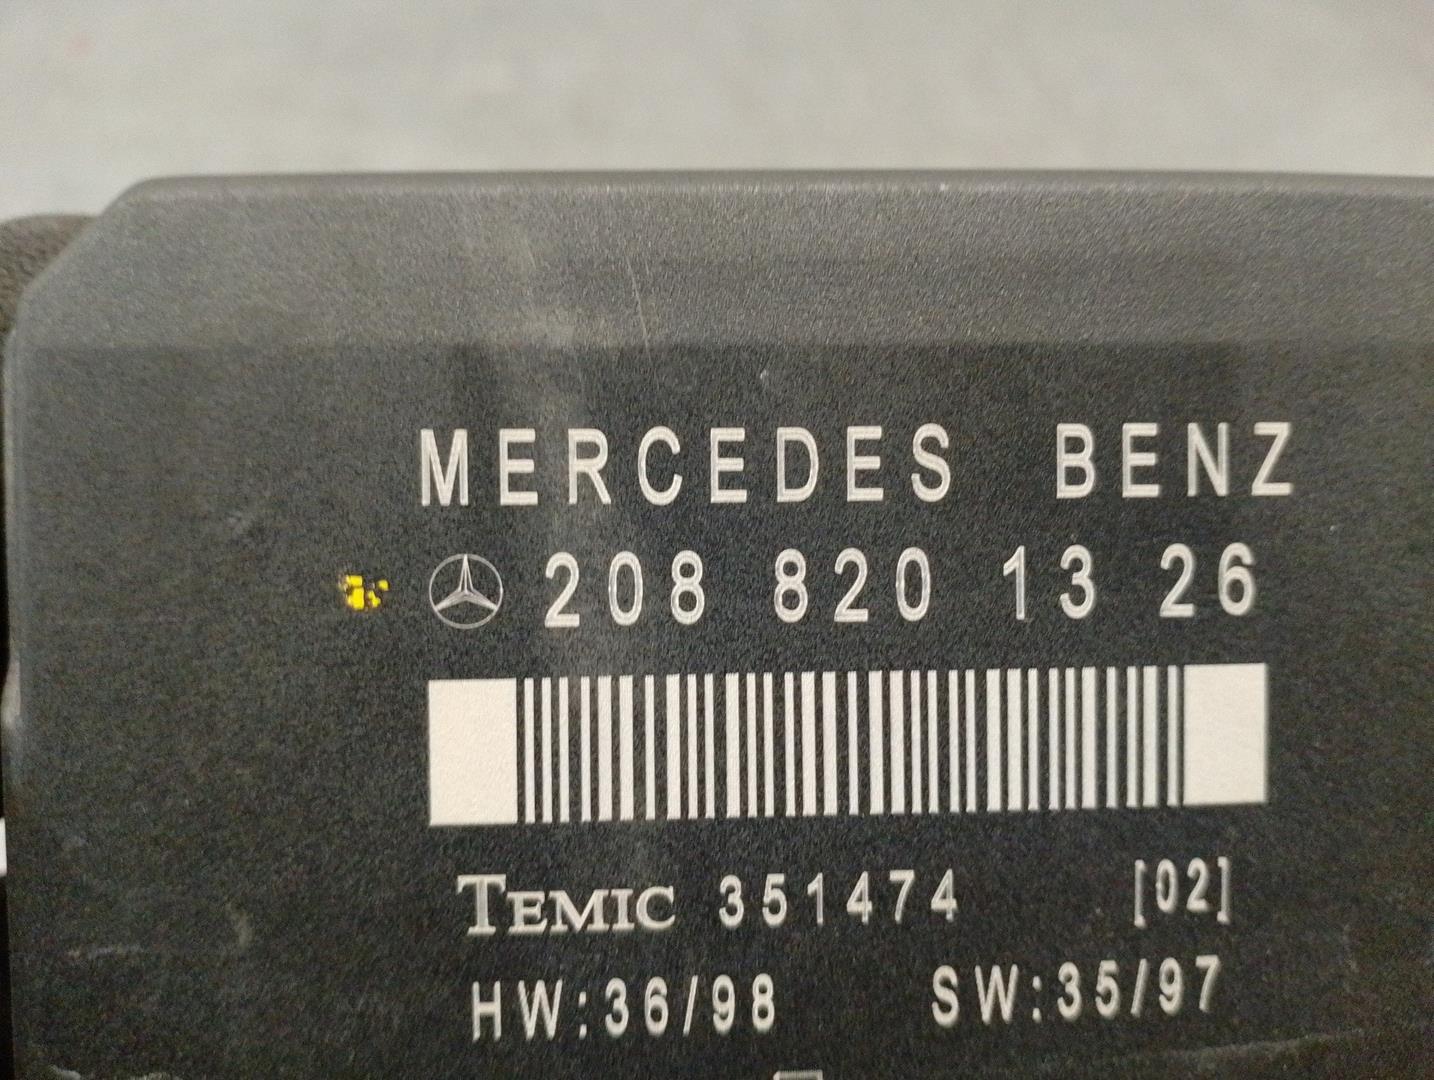 MERCEDES-BENZ E-Class W210 (1995-2002) Kiti valdymo blokai 2088201326, 351474, TEMIC 24207448